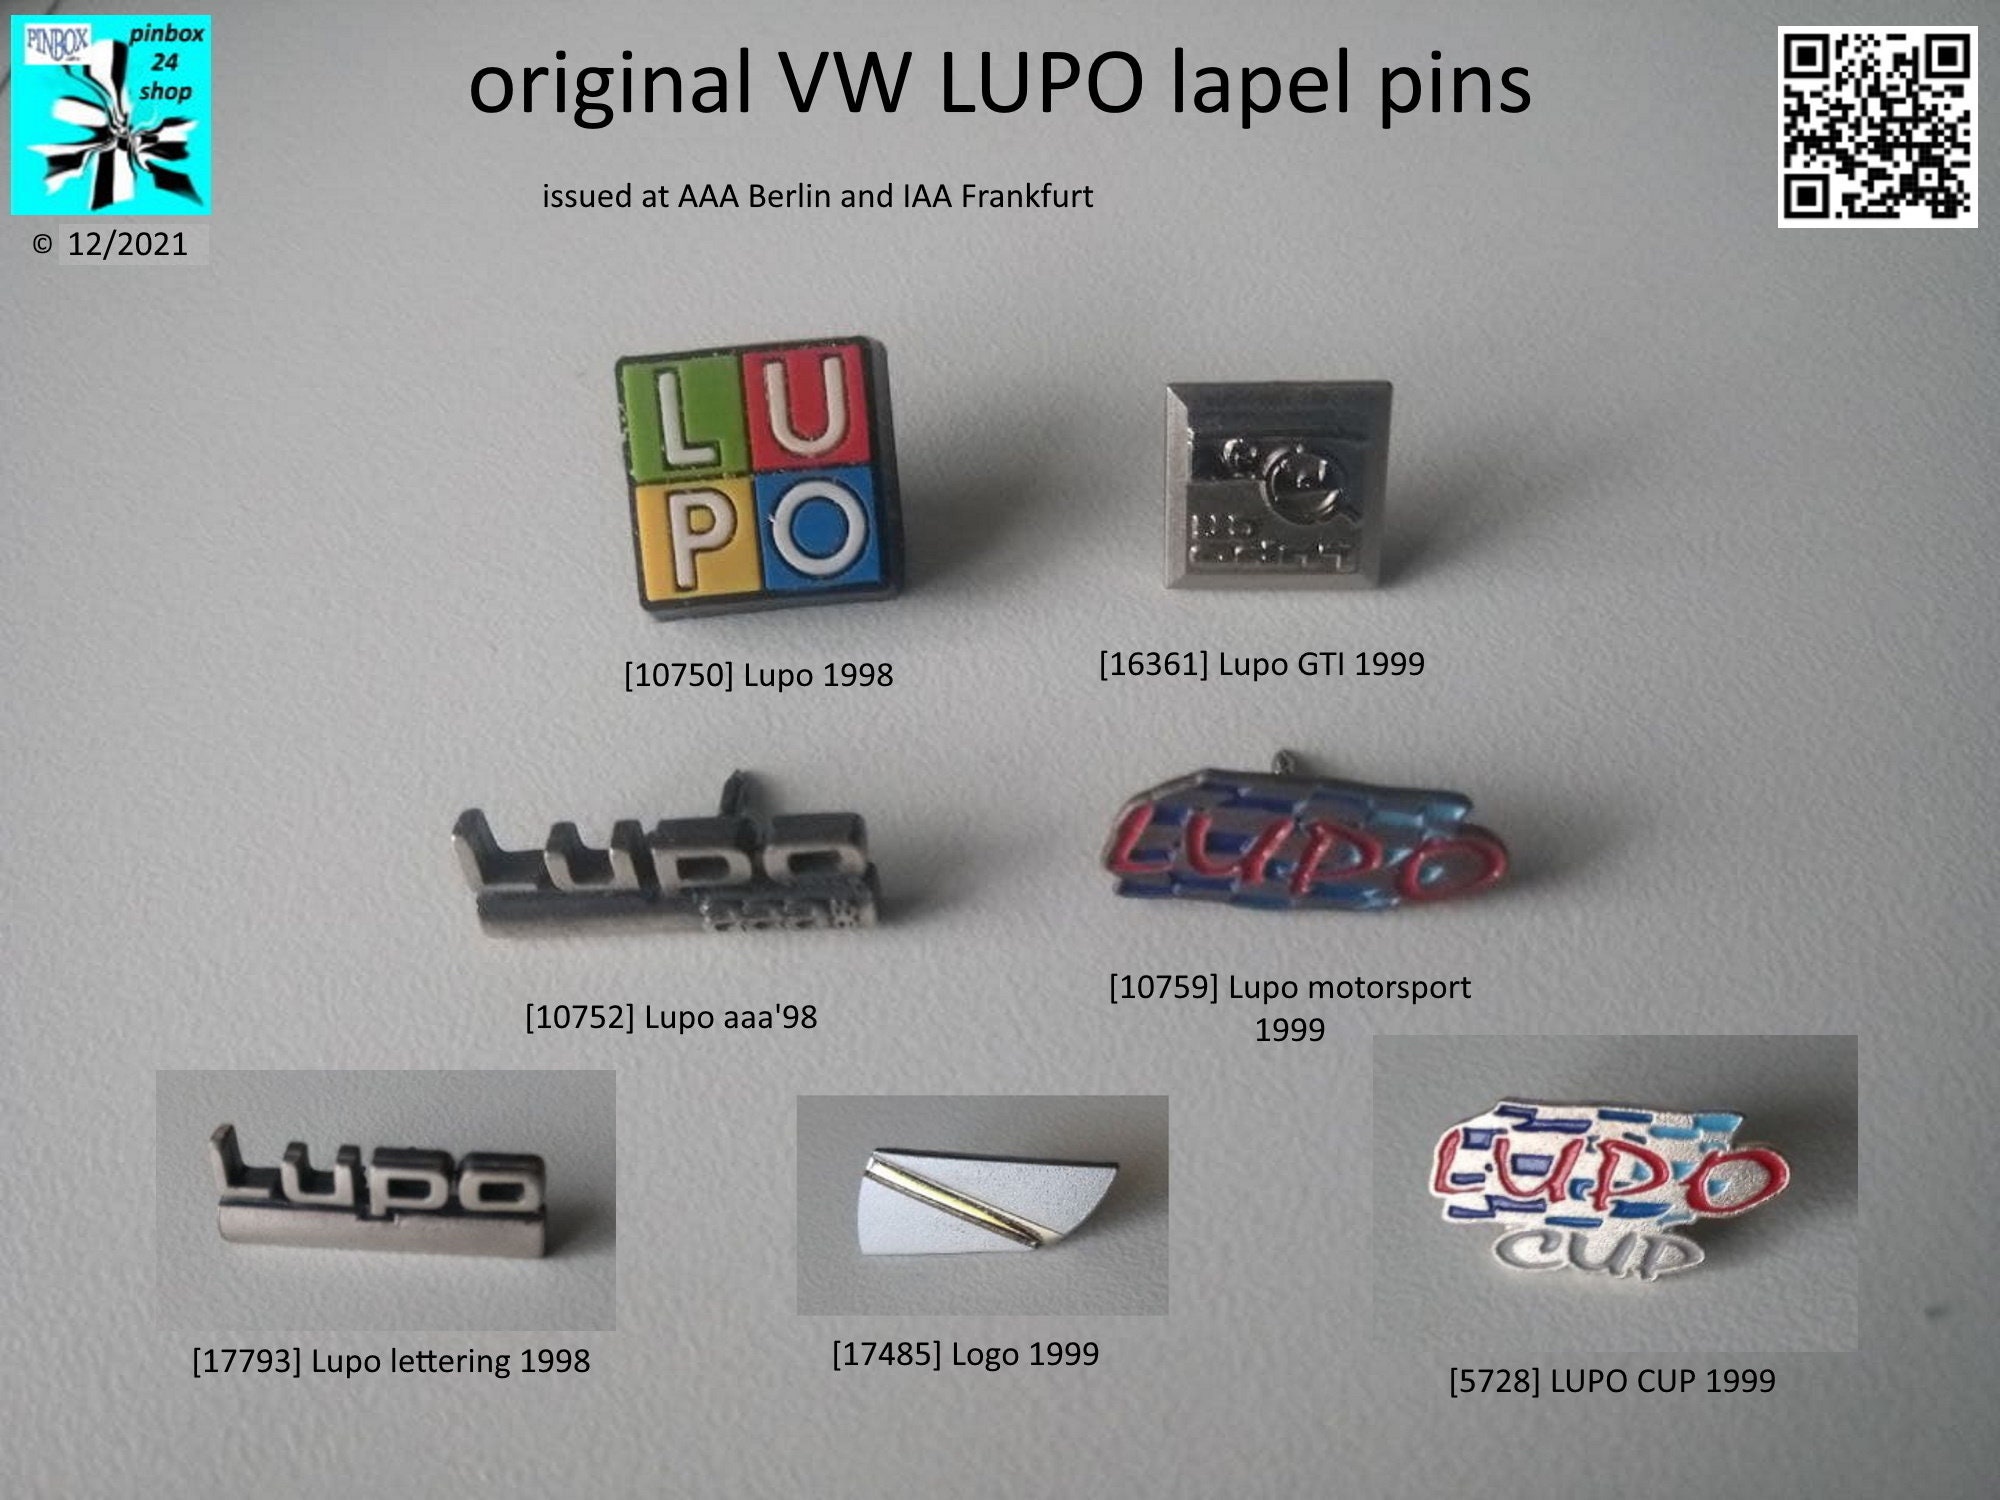 Oxideren Aannemelijk Langwerpig Een stukje VW-geschiedenis: Lupo-spelden uit 1998/99 - Etsy Nederland